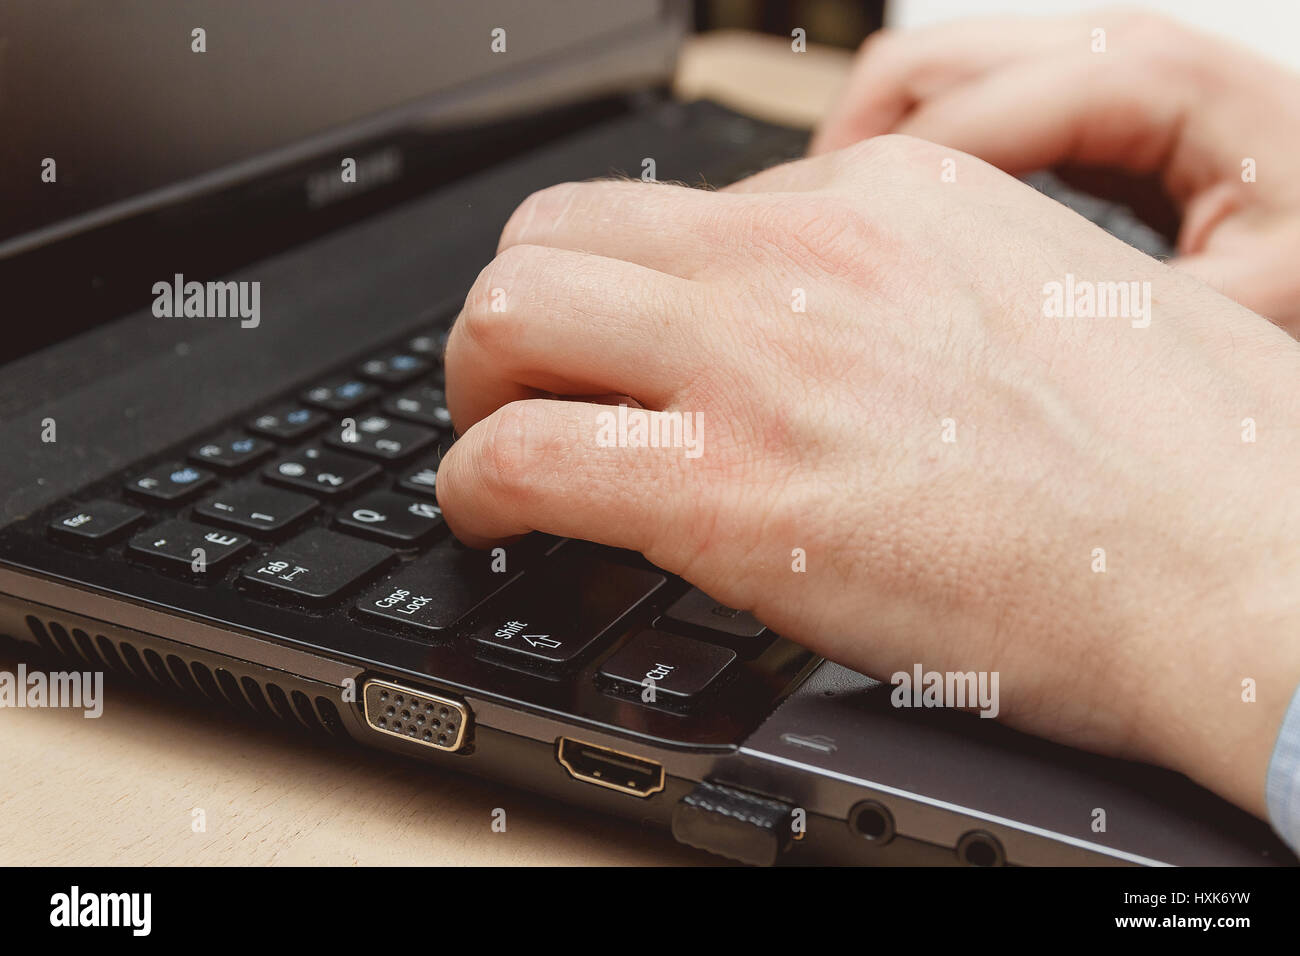 Businessman hand en utilisant le clavier sur ordinateur portable Banque D'Images